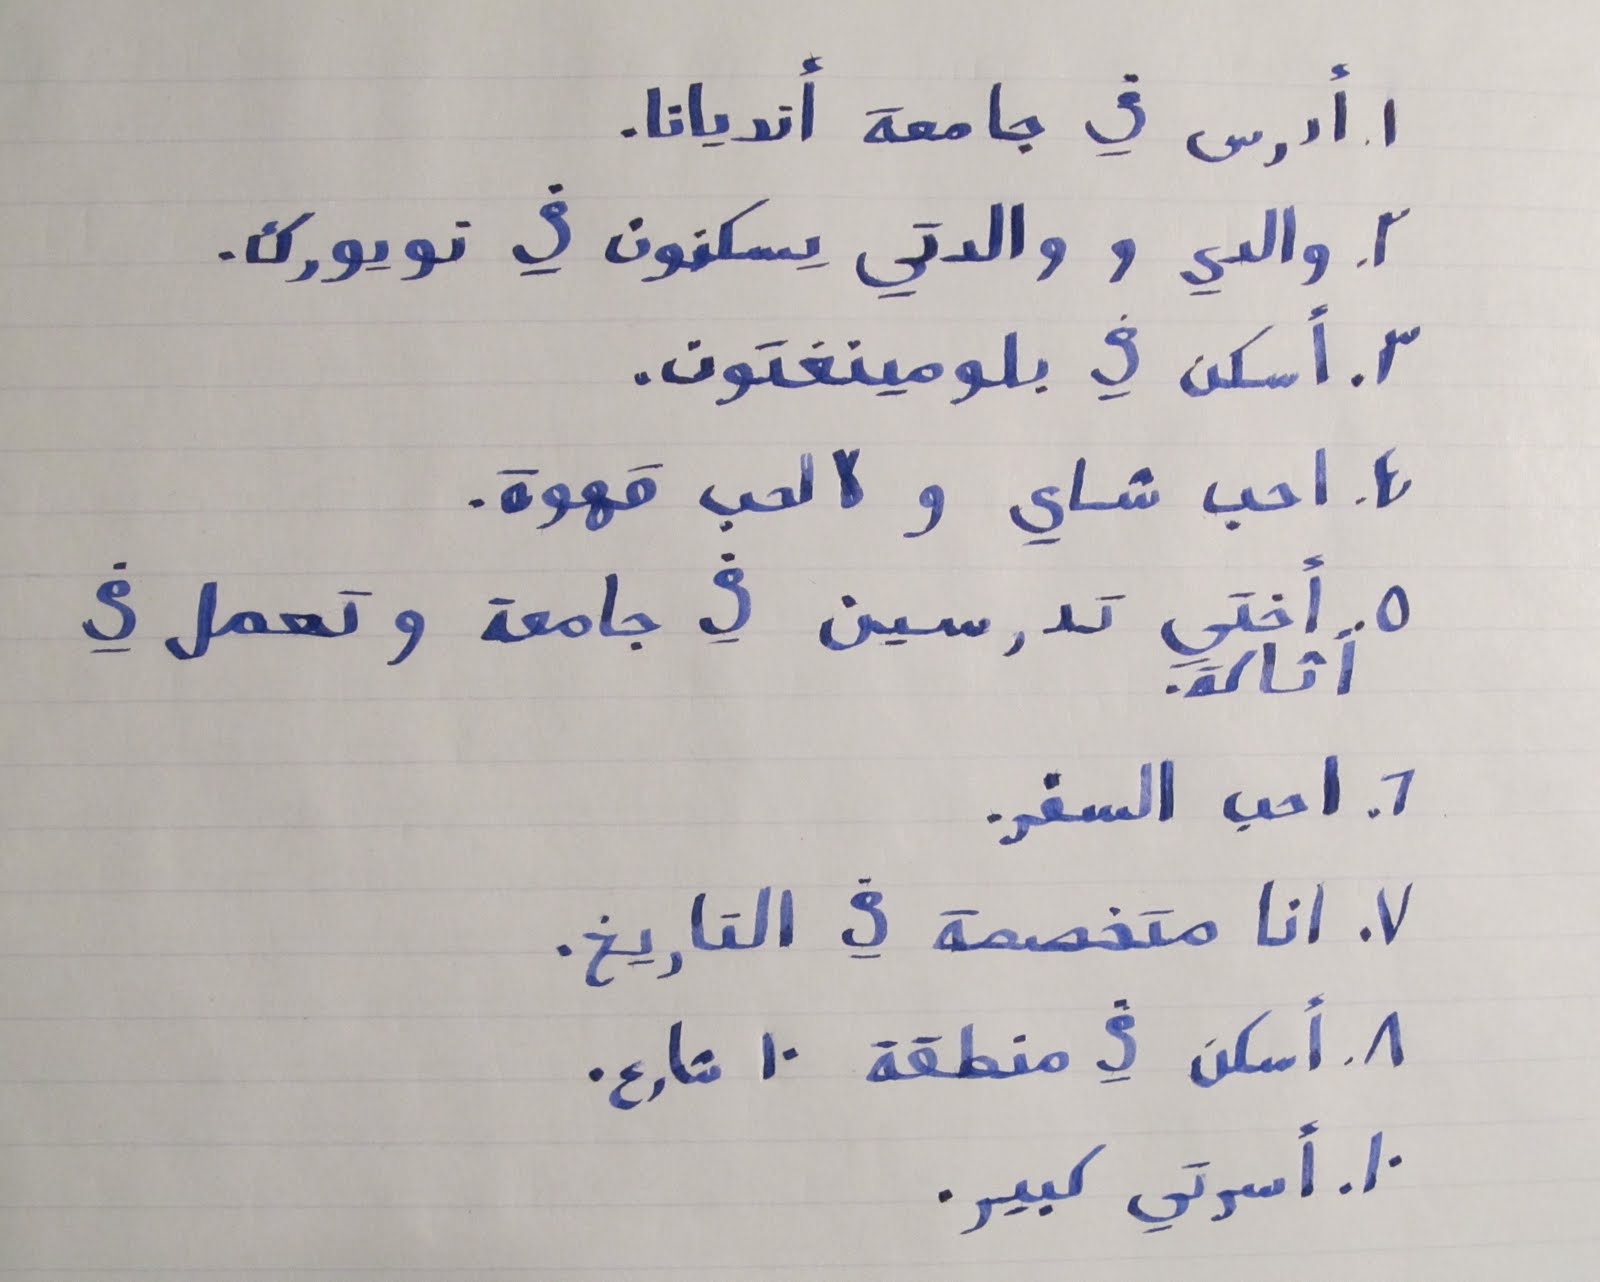 Life quotes written in arabic quotesgram